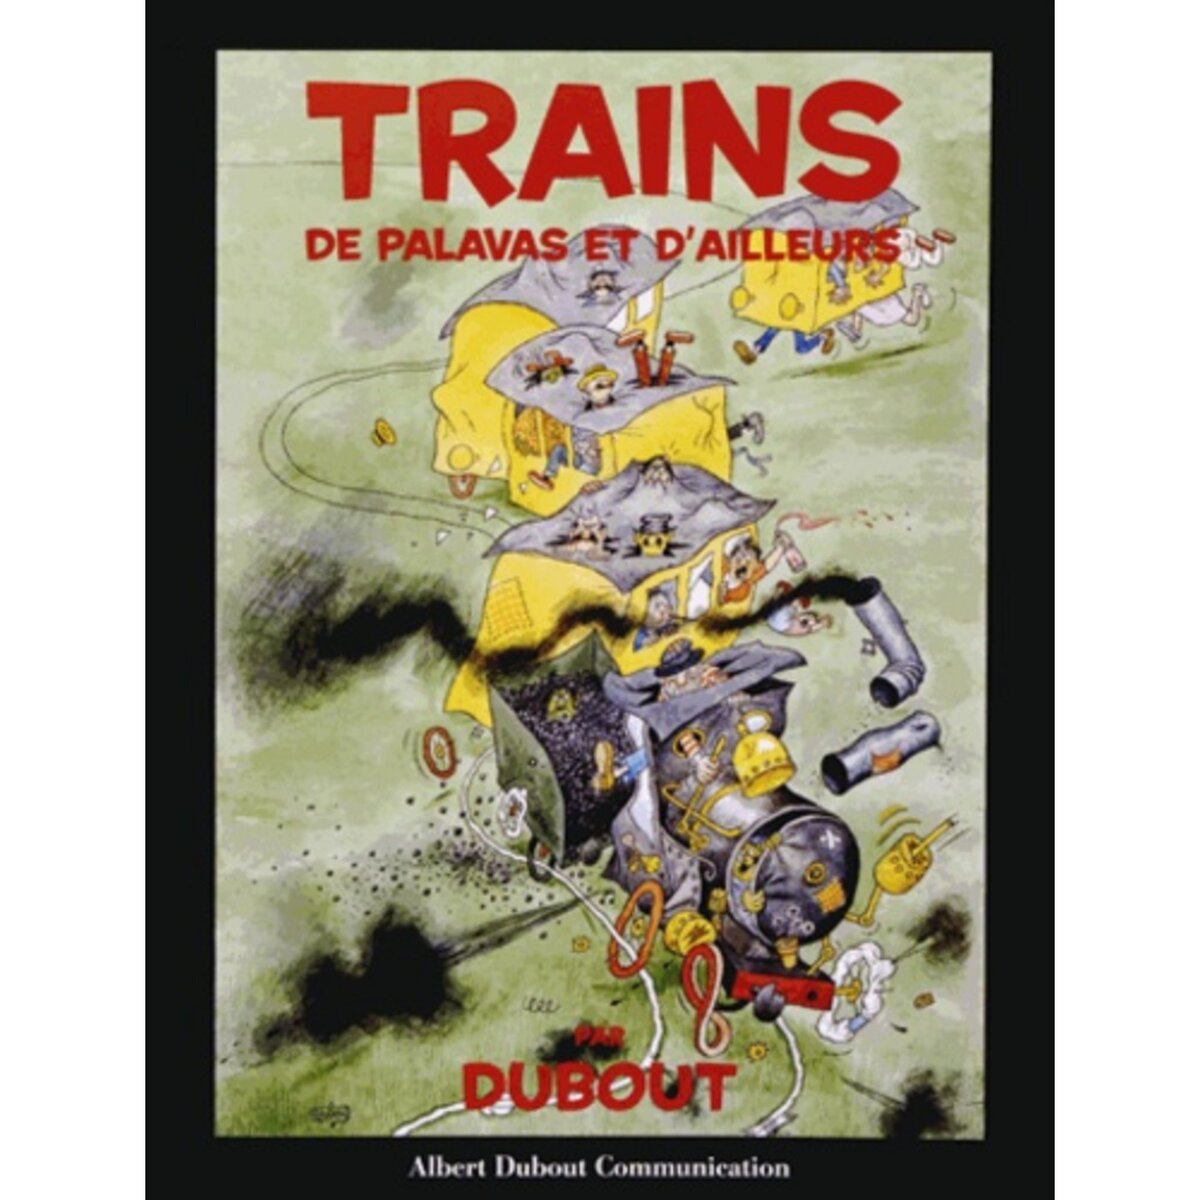  TRAINS DE PALAVAS ET D'AILLEURS, Dubout Albert